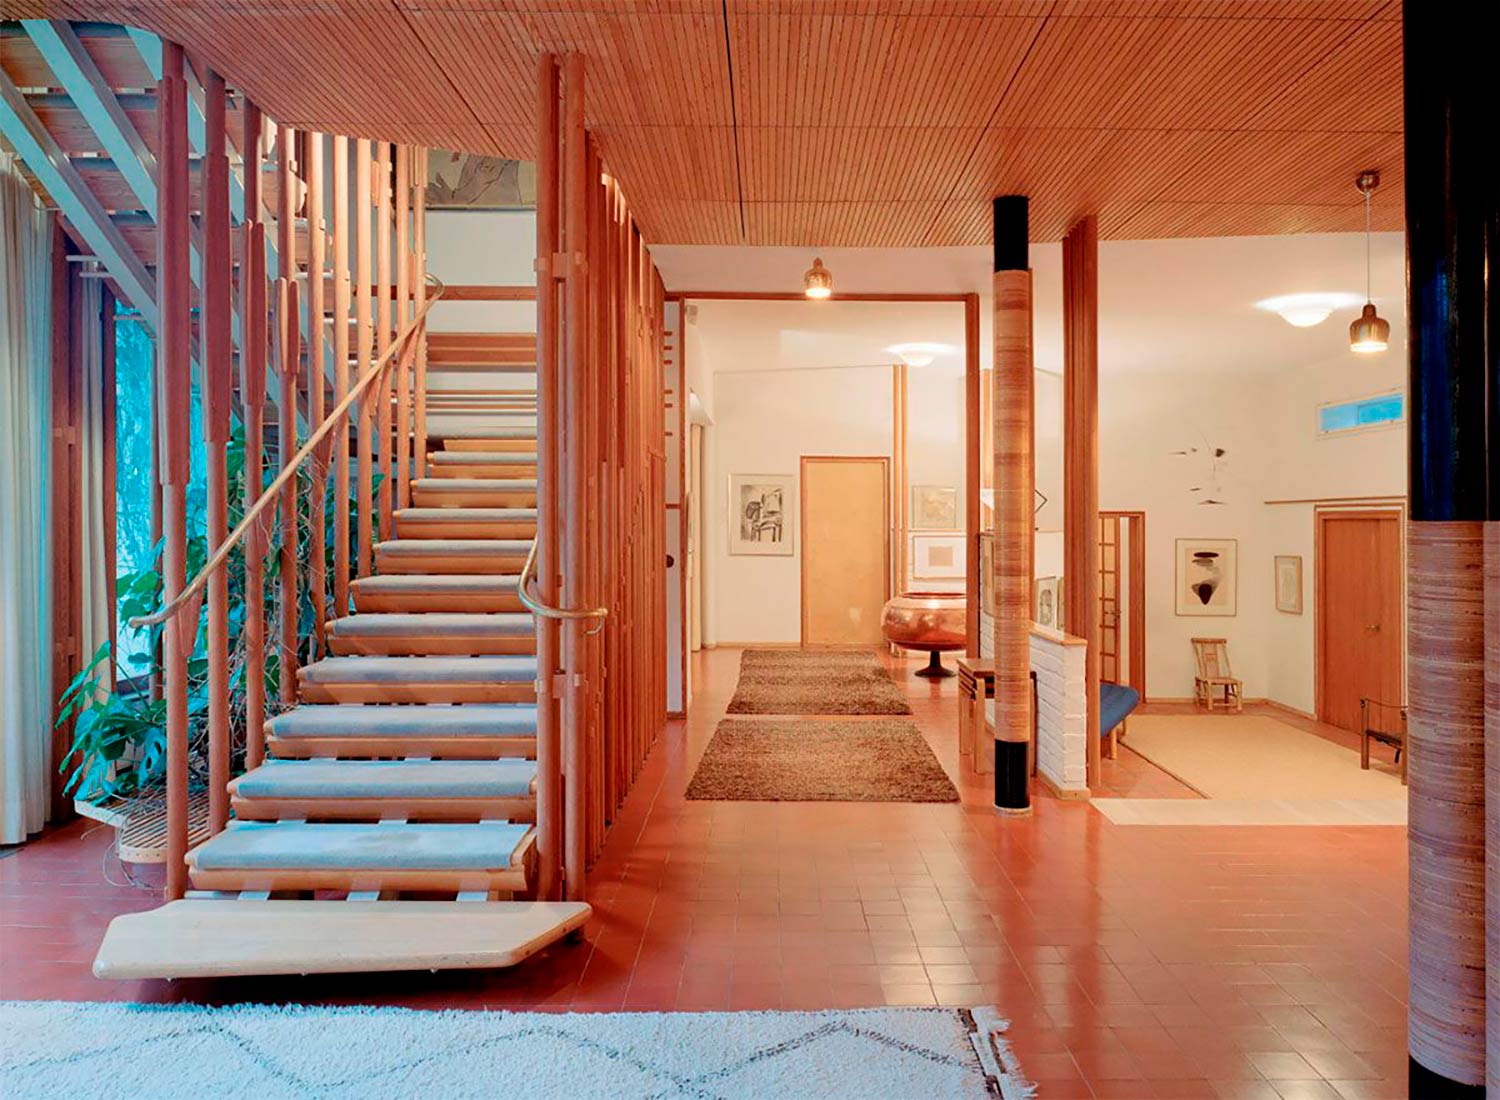 Interior de una vivienda de diseño, con suelo adoquinado color teja, escalera de madera con peldaños enmoquetados, pasamanos de cobre, techo de madera, alfombras y vegetación. Poppyns Magazine